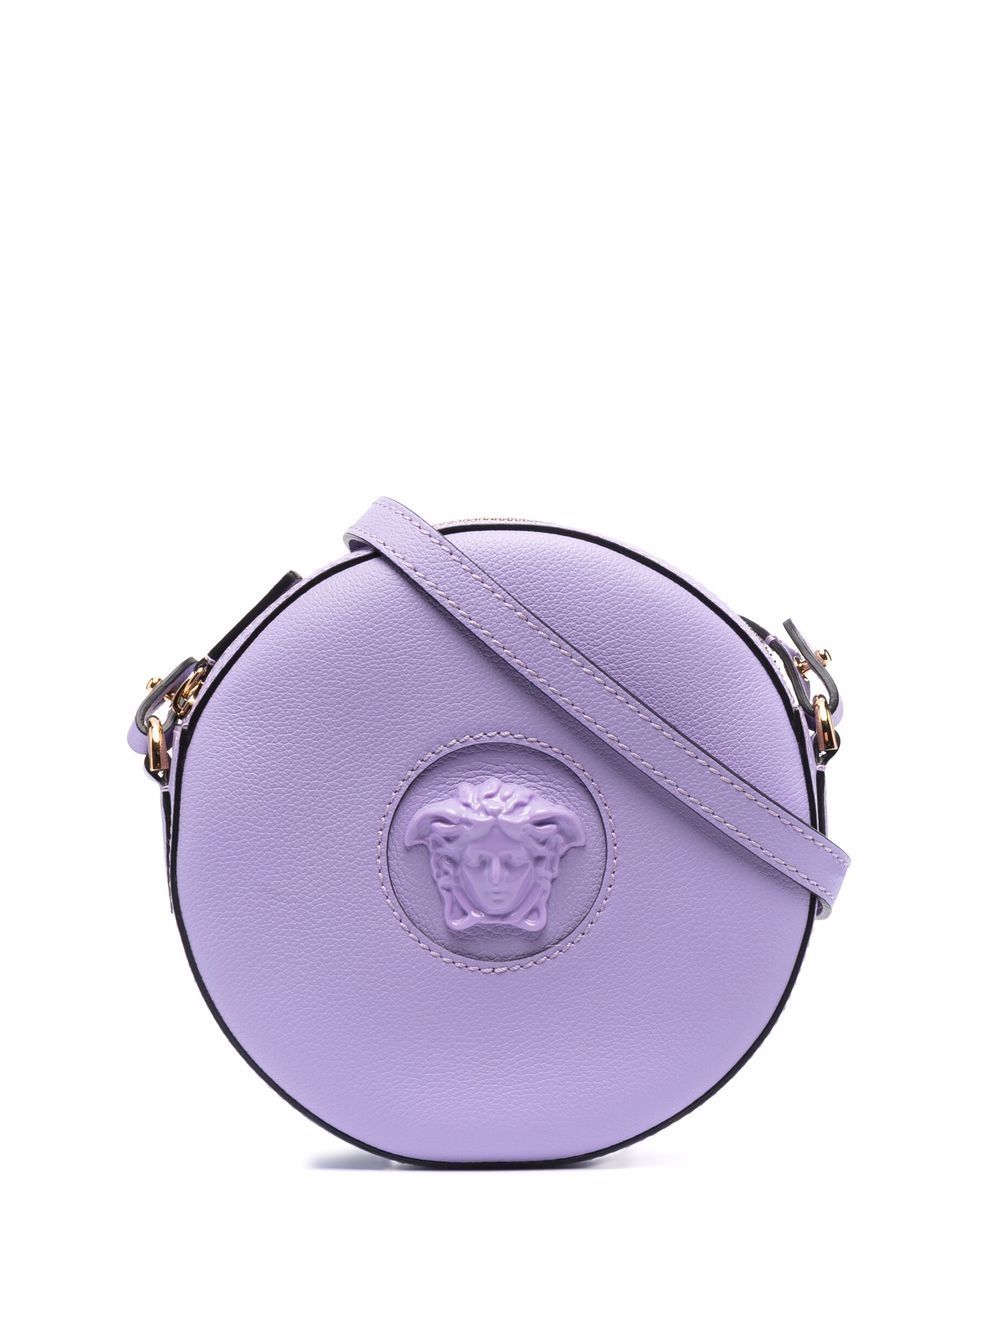 фото Versace каркасная сумка la medusa